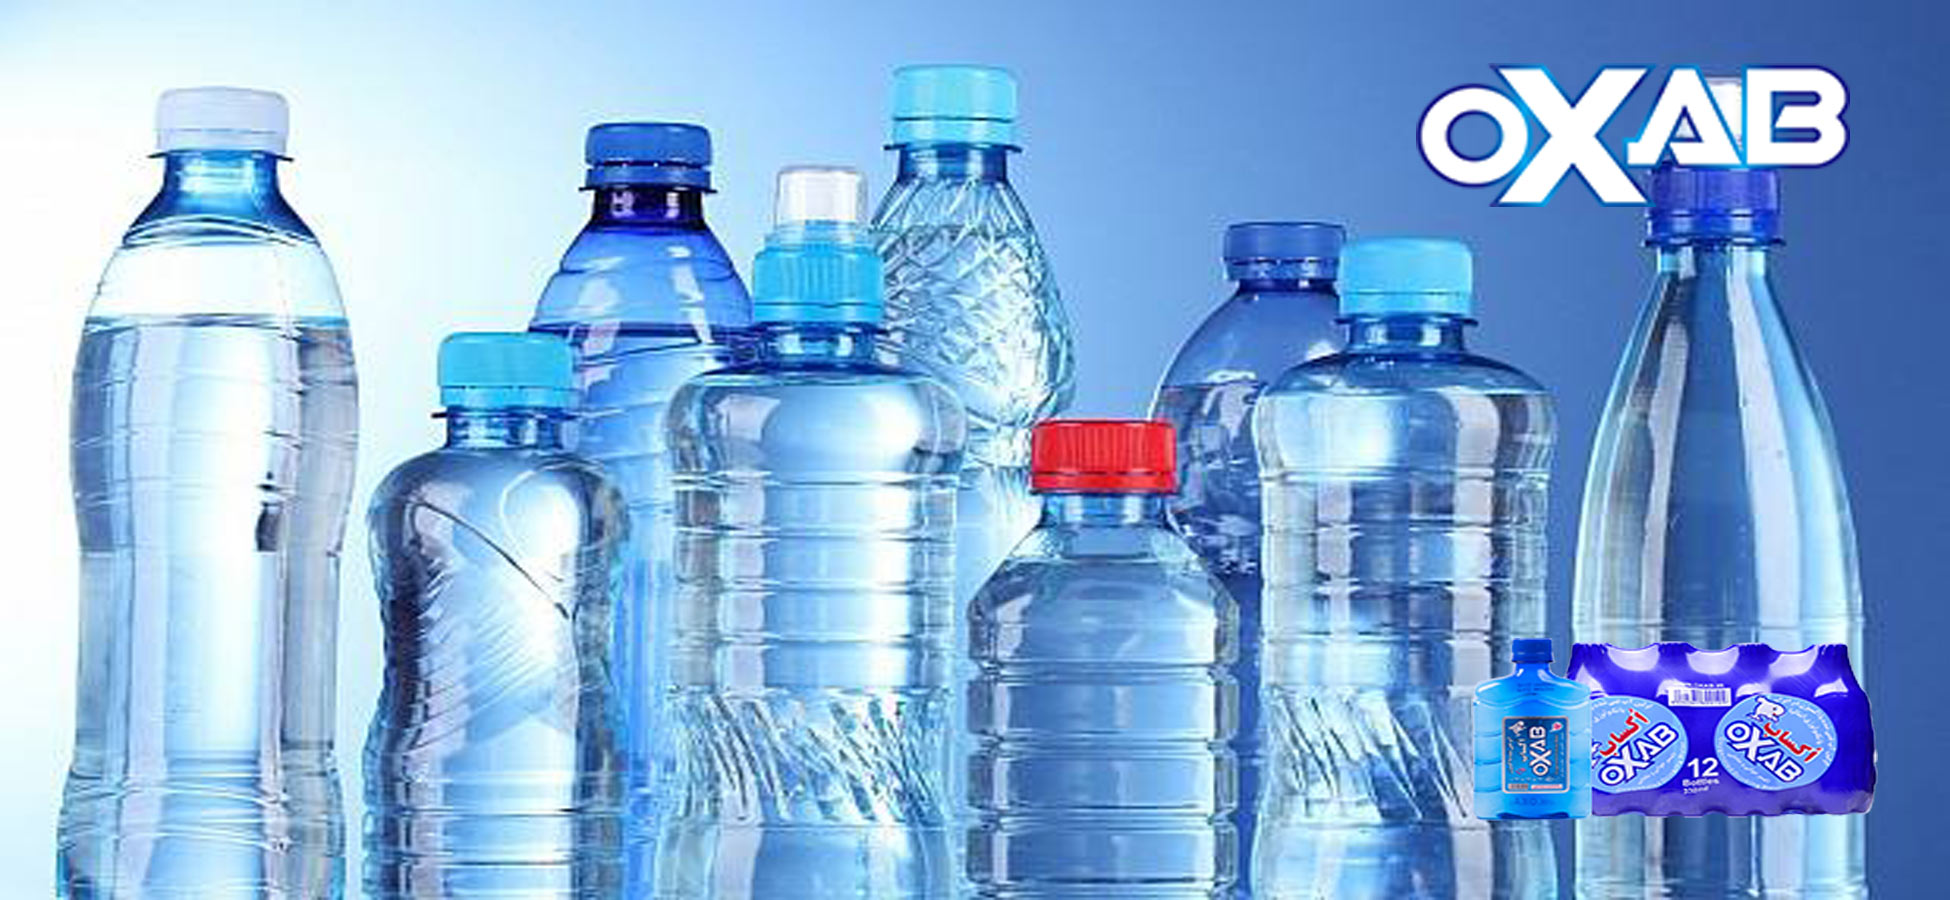 5 نکته در خرید آب آشامیدنی که باید به آن توجه داشته باشیم